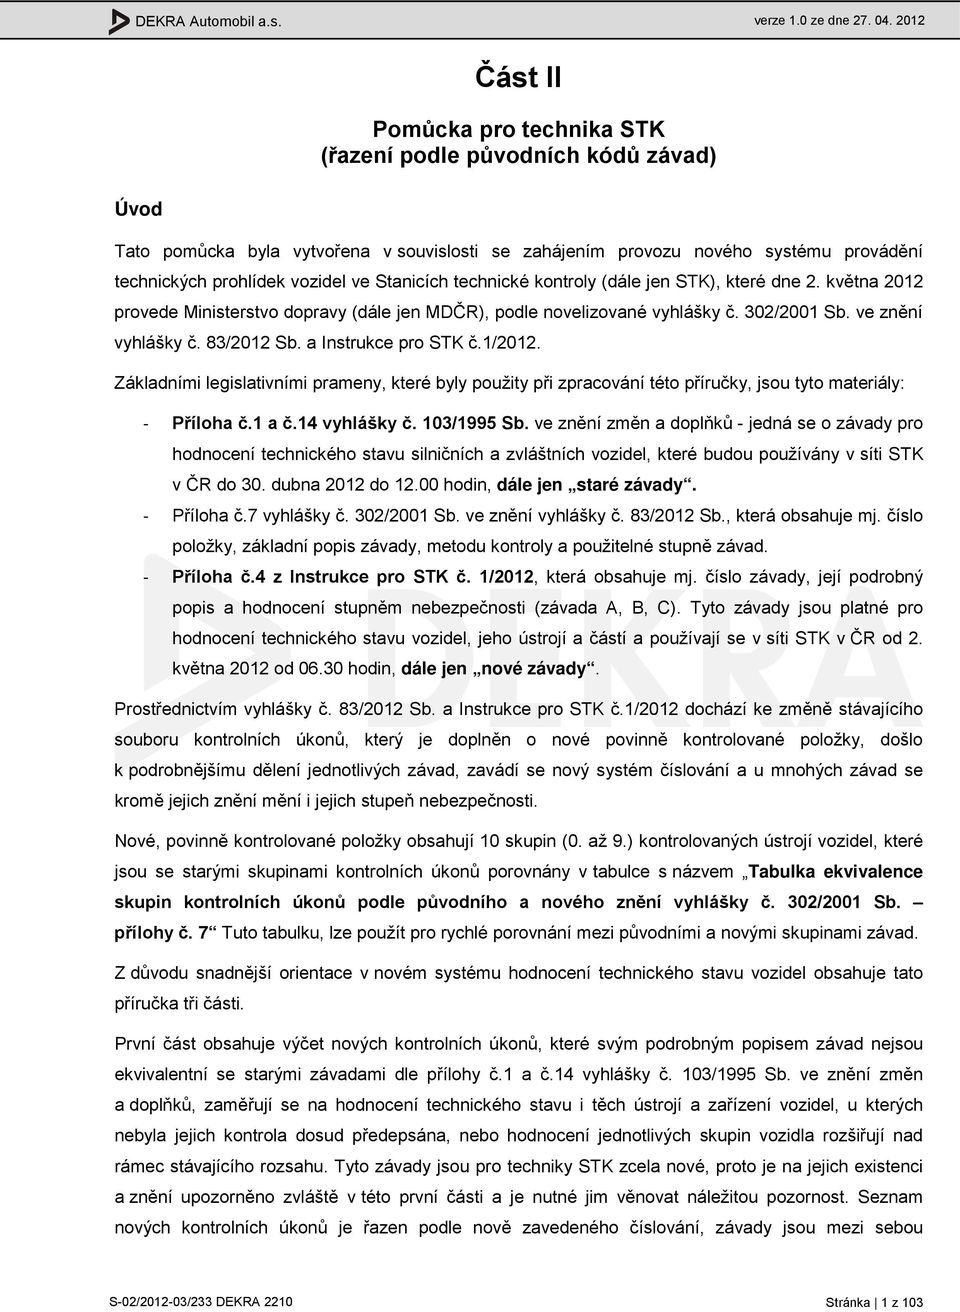 Stanicích technické kontroly (dále jen STK), které dne 2. května 2012 provede Ministerstvo dopravy (dále jen MDČR), podle novelizované vyhlášky č. 302/2001 Sb. ve znění vyhlášky č. 83/2012 Sb.